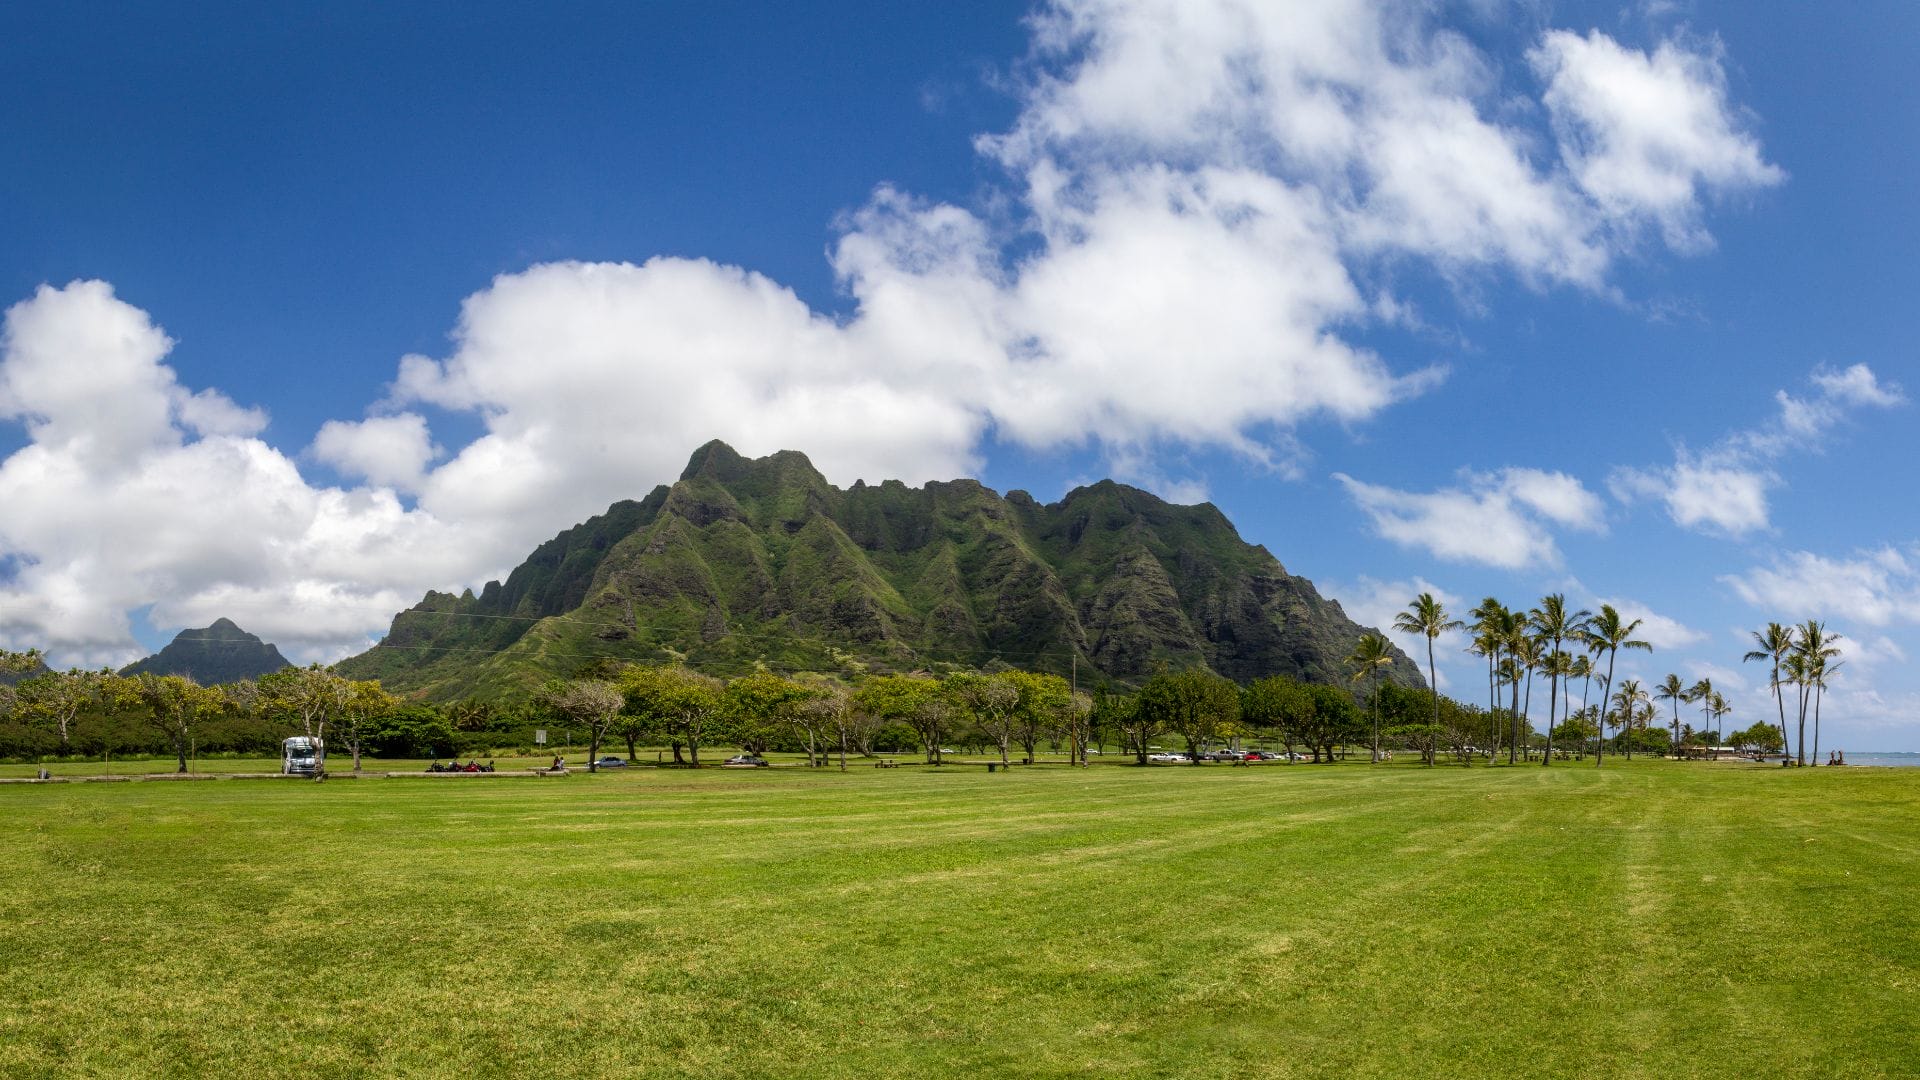 How Far is Kualoa Ranch from Waikiki - Overview